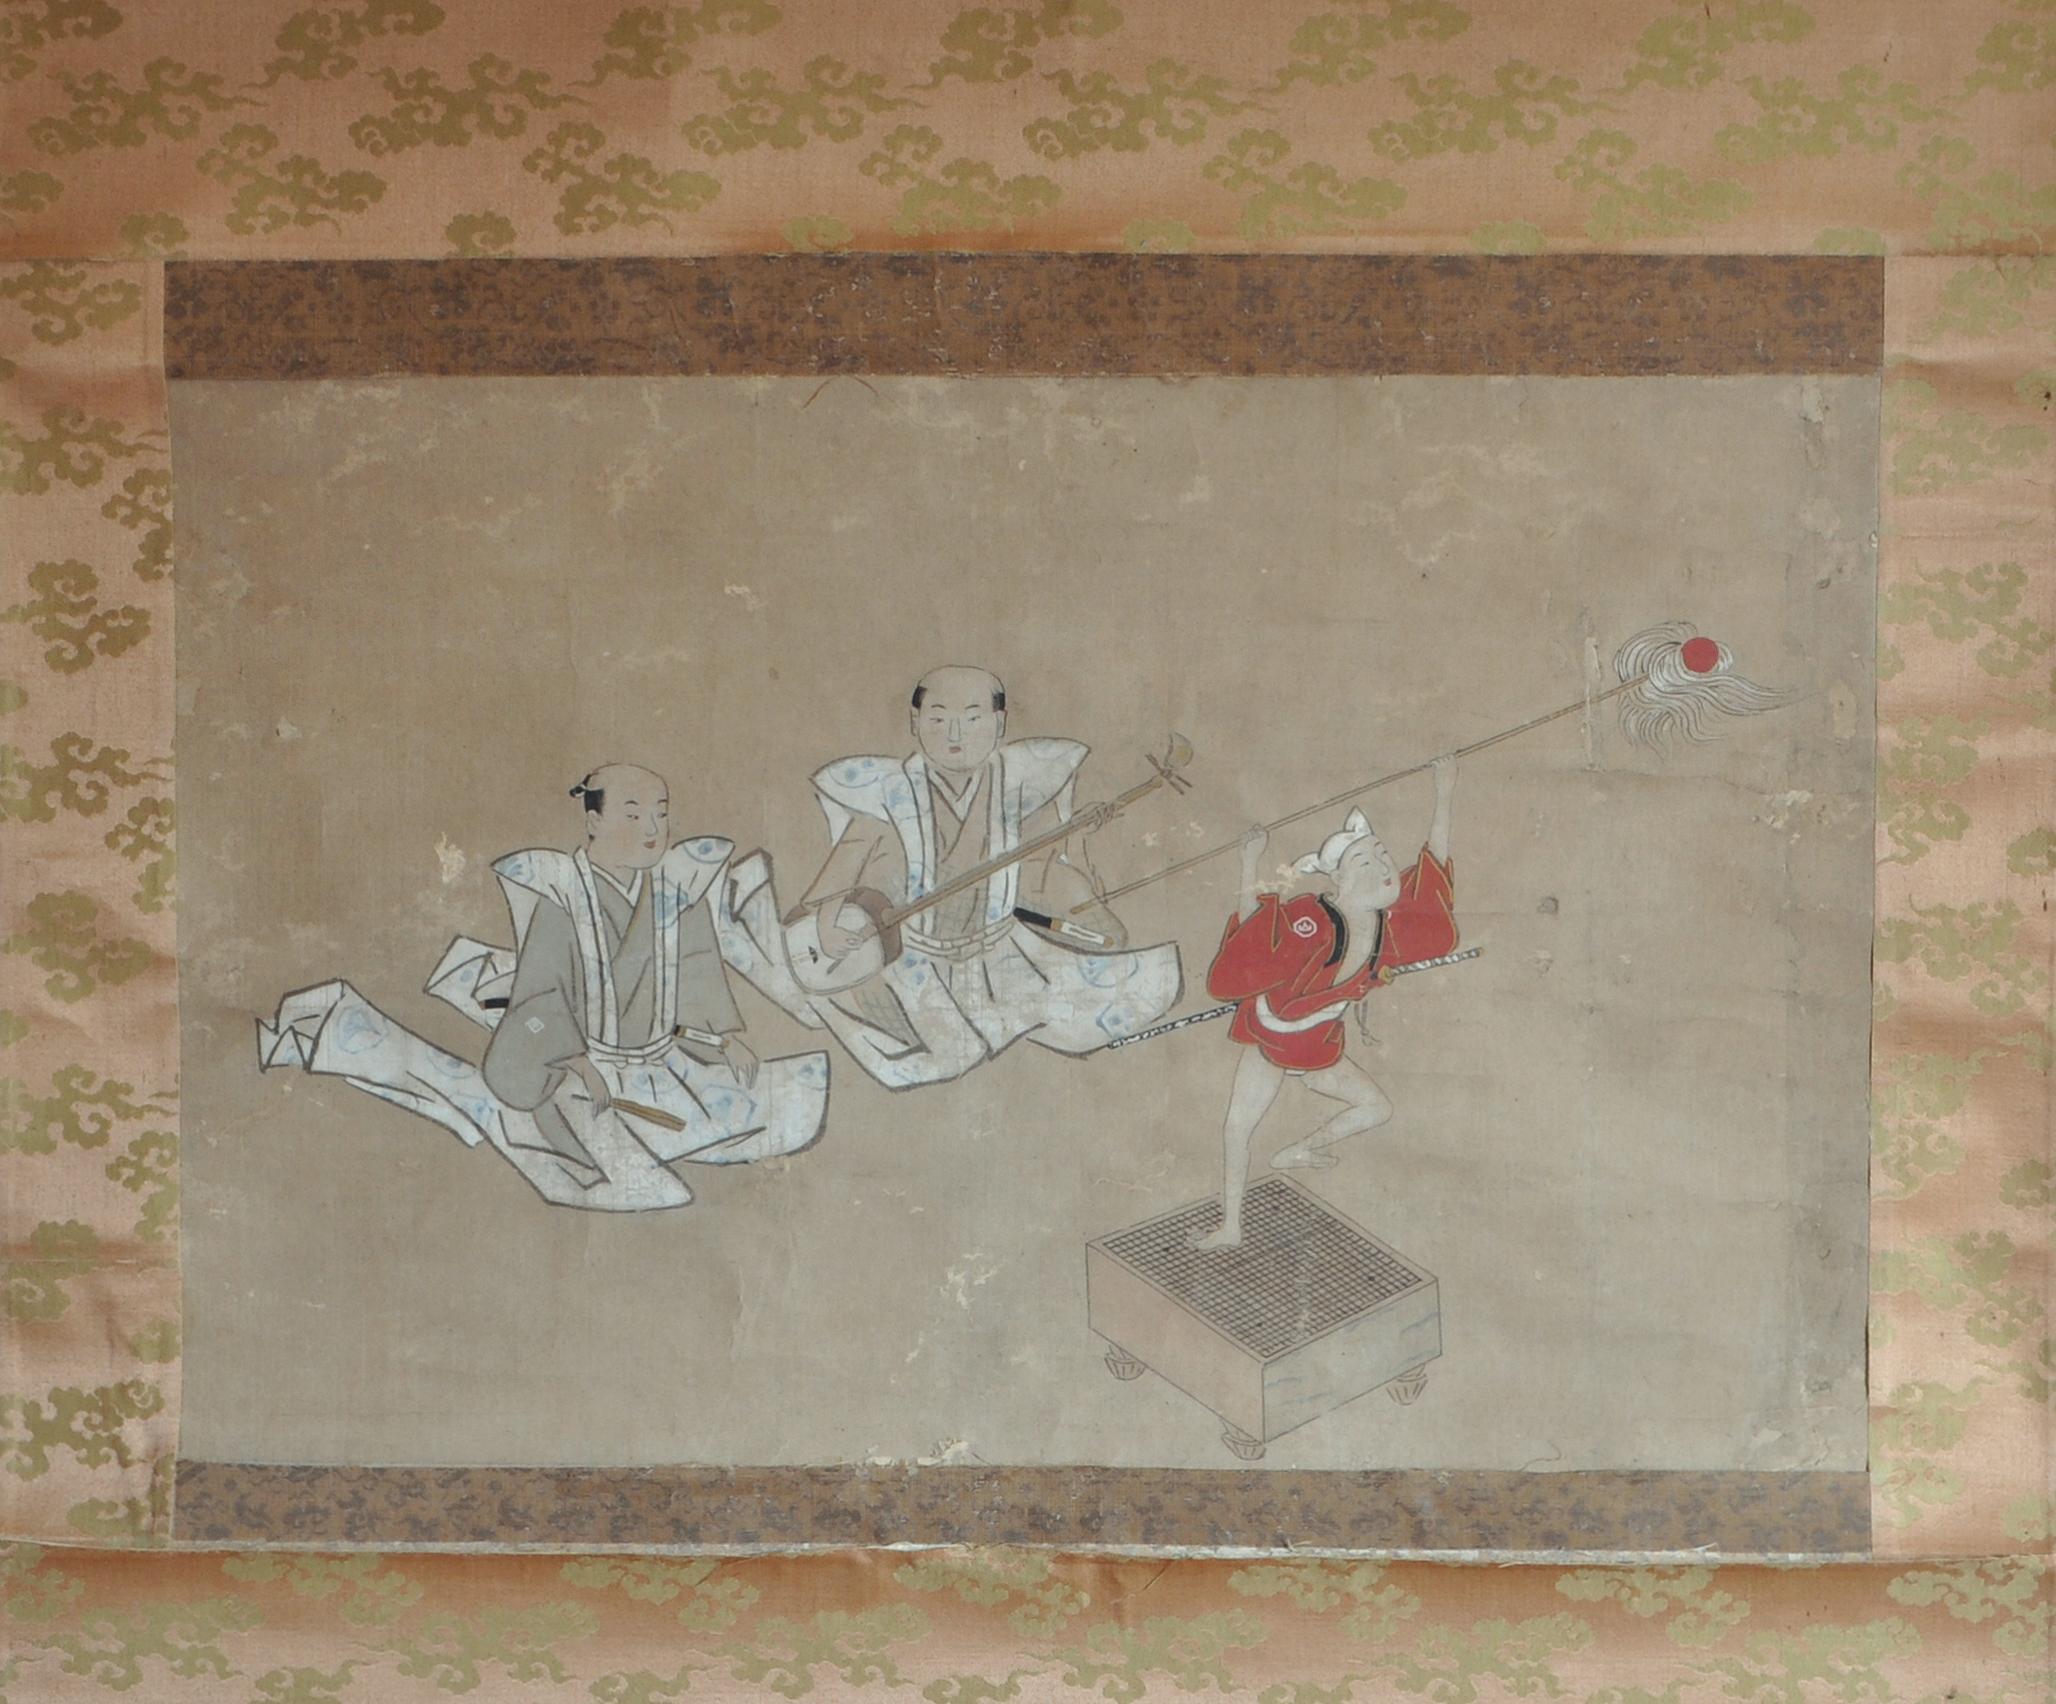 Description - Rouleau suspendu représentant une scène surréaliste de musique et de danse avec deux samouraïs assis et un enfant acteur sur un plateau de jeu de go qui joue le rôle d'une petite marionnette dansante en tant qu'accompagnateur d'un